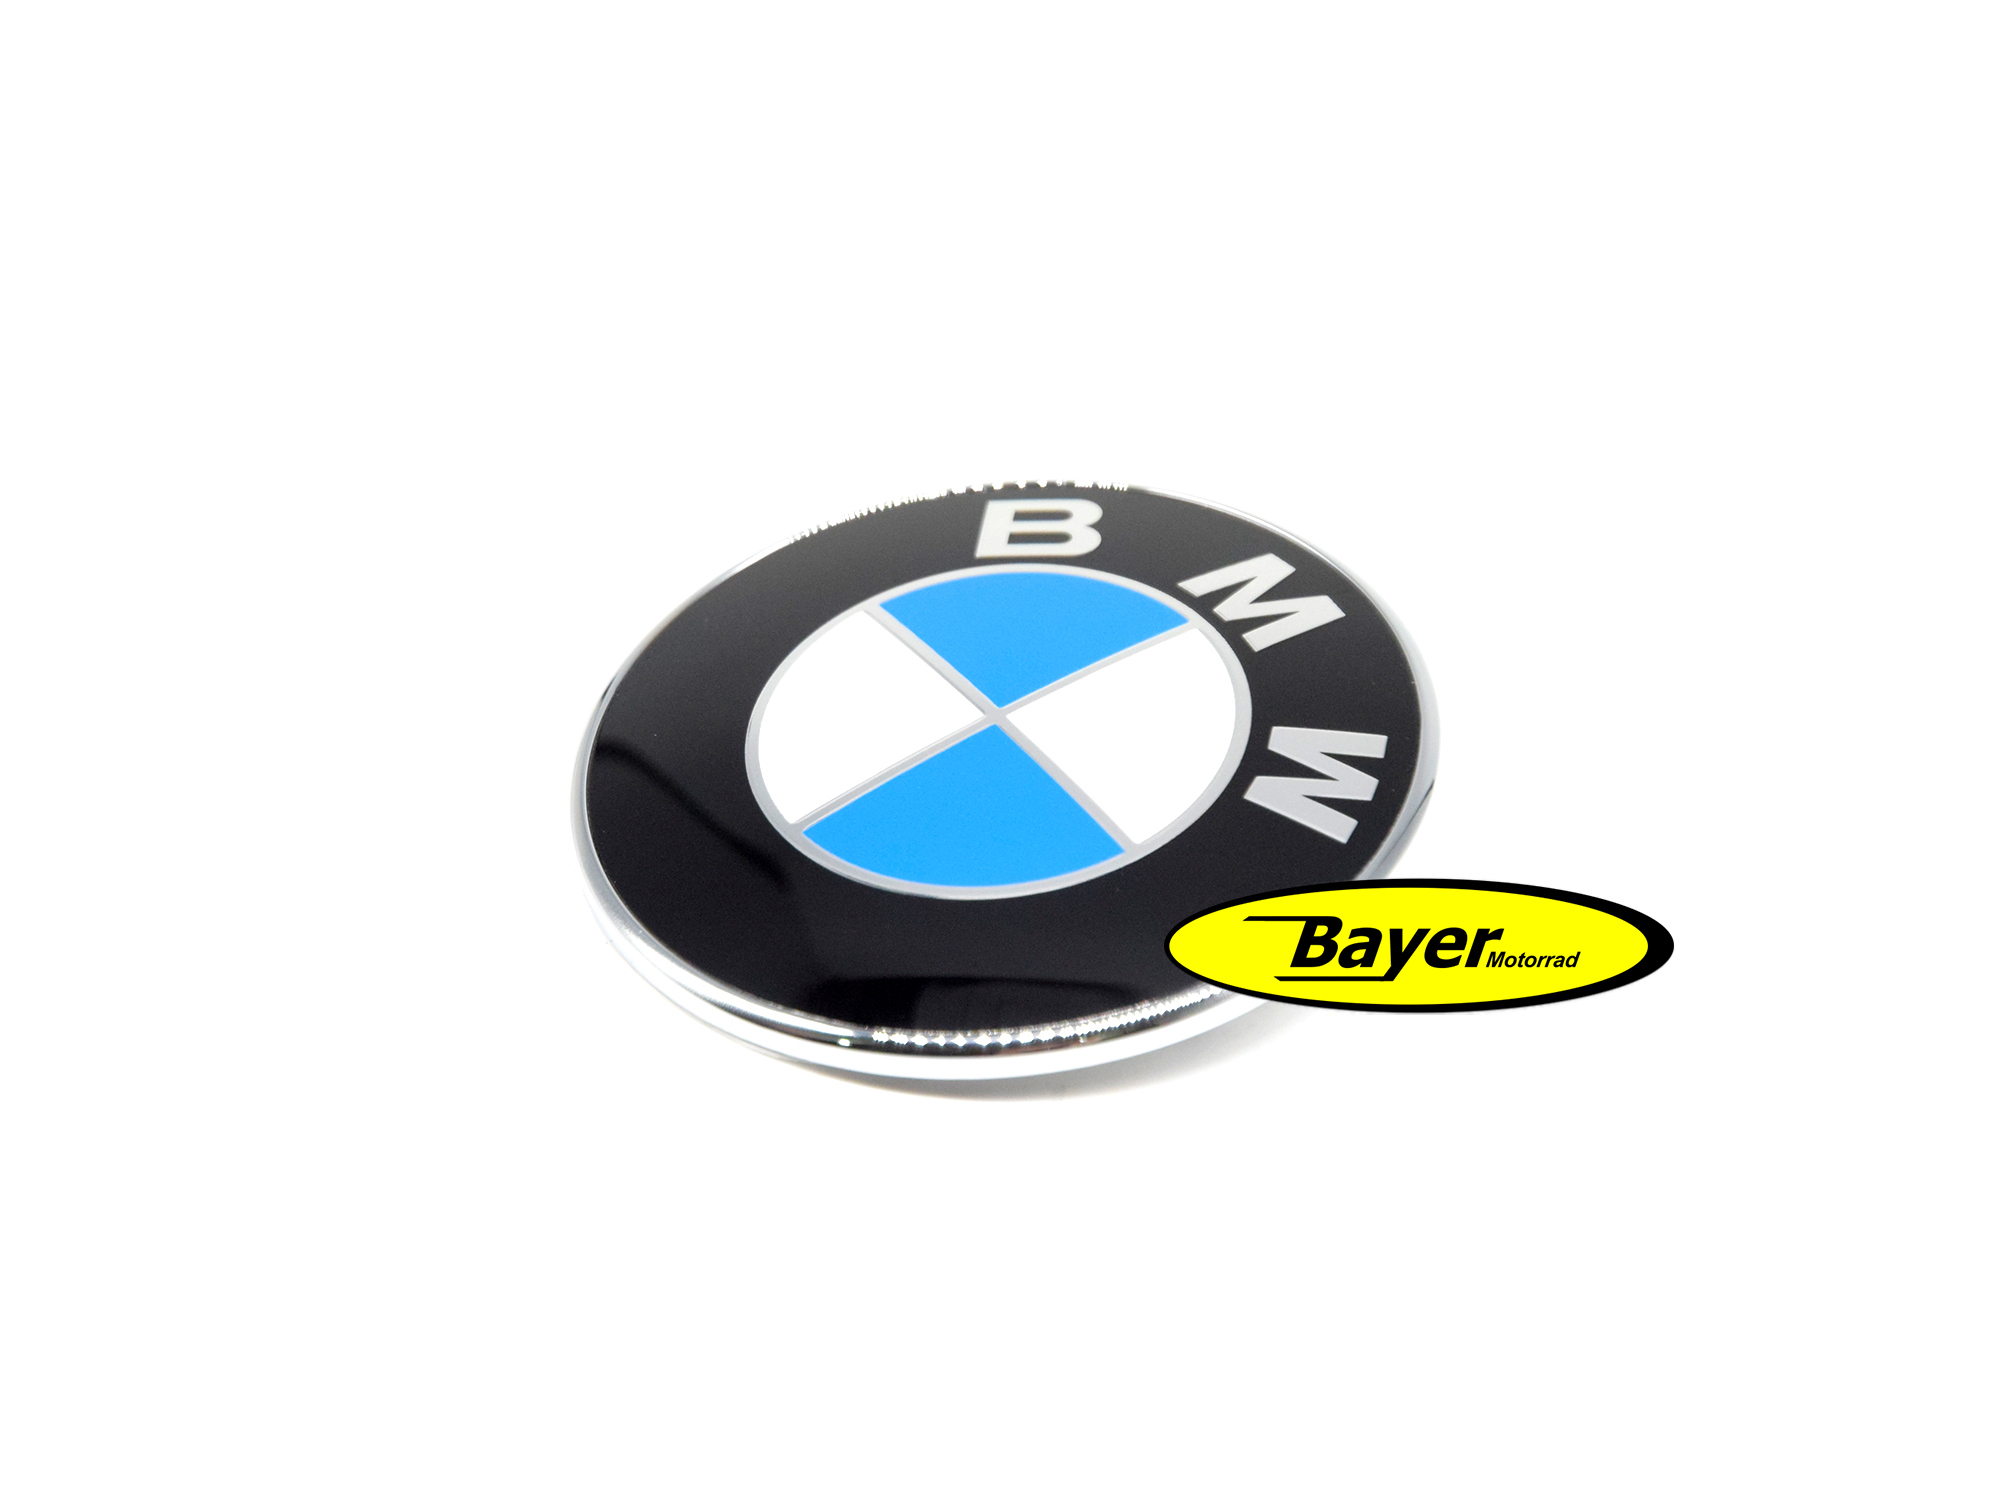 Emblema BMW de 70 mm, con borde cromado y 2 pasadores de guía